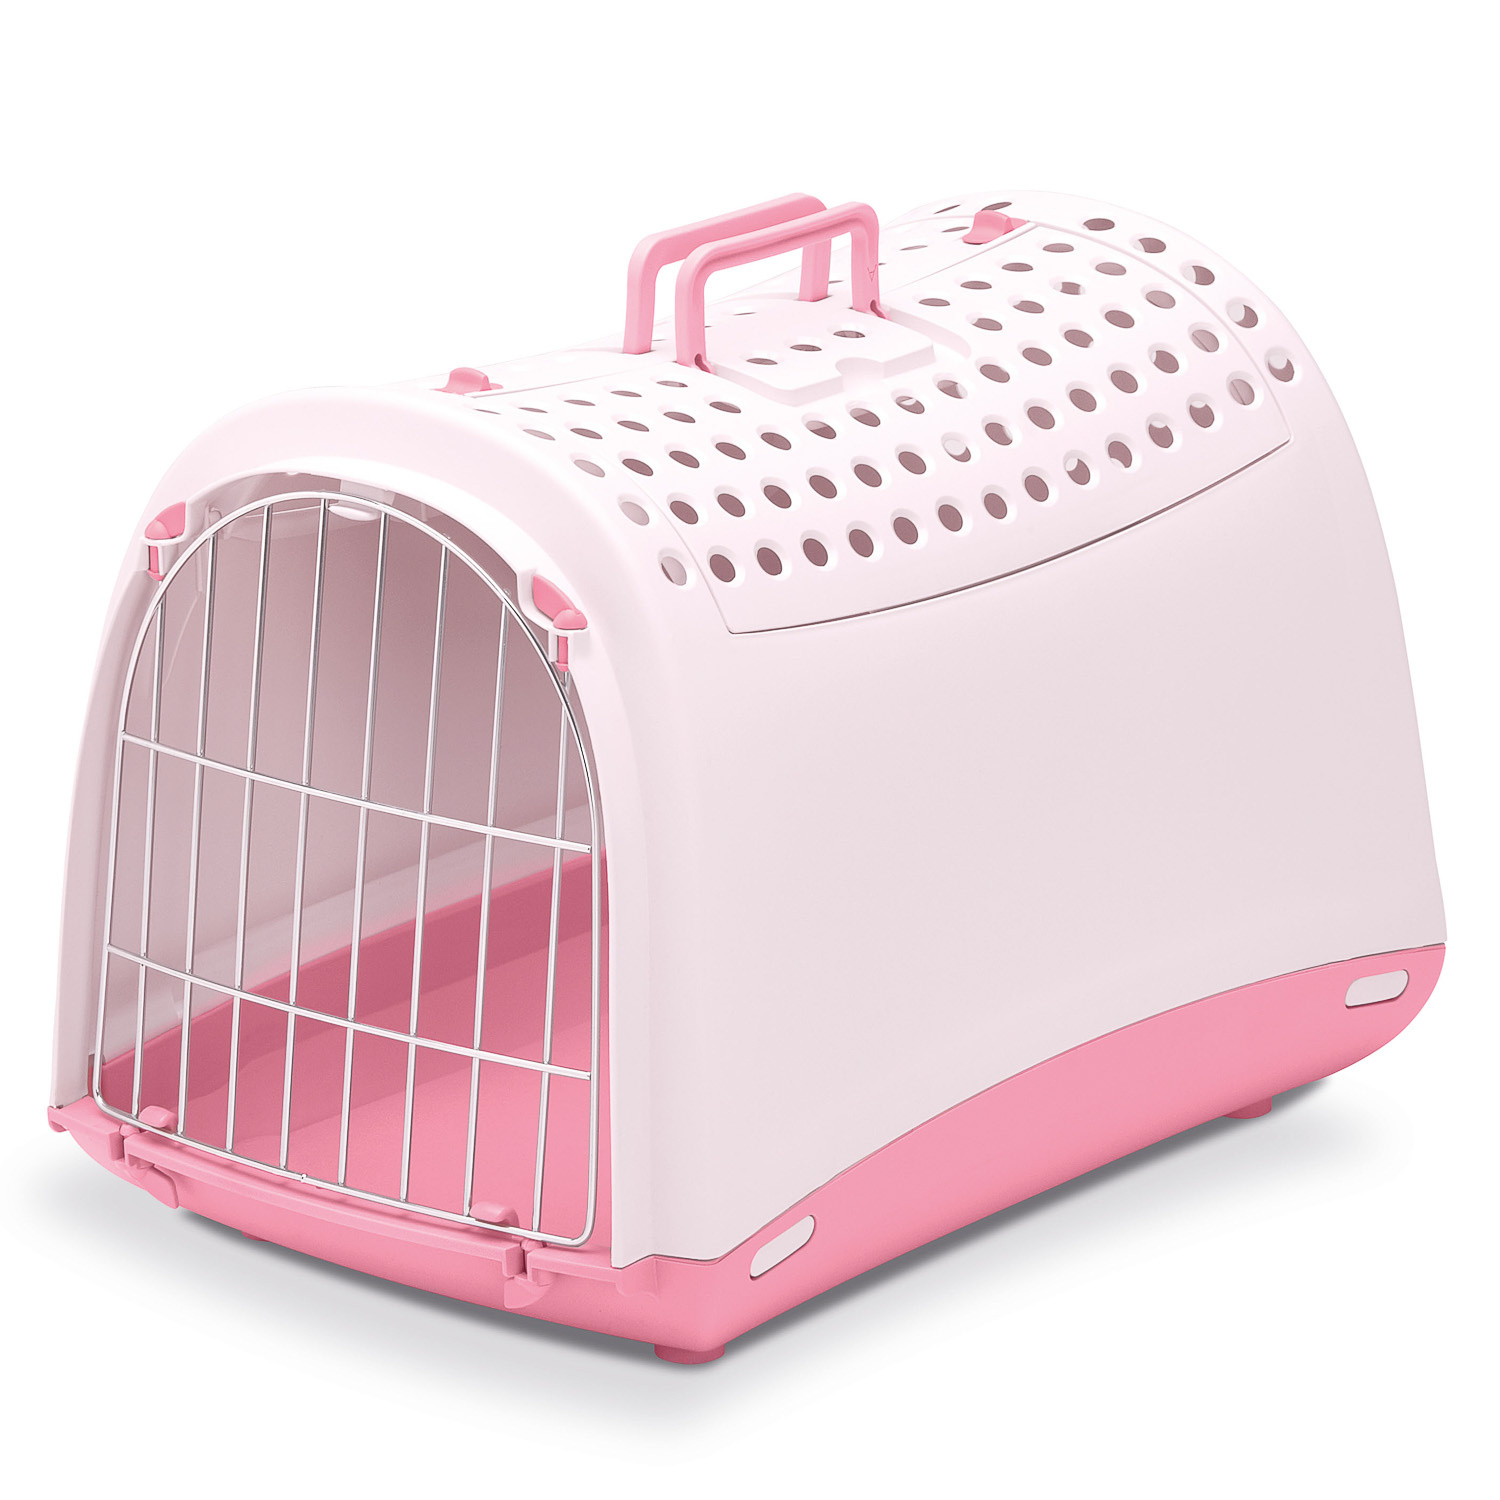 IMAC IMAC переноска для кошек и собак, нежно-розовый (1,37 кг) переноска для животных imac carry sport бордовая 48 5х34х32 см